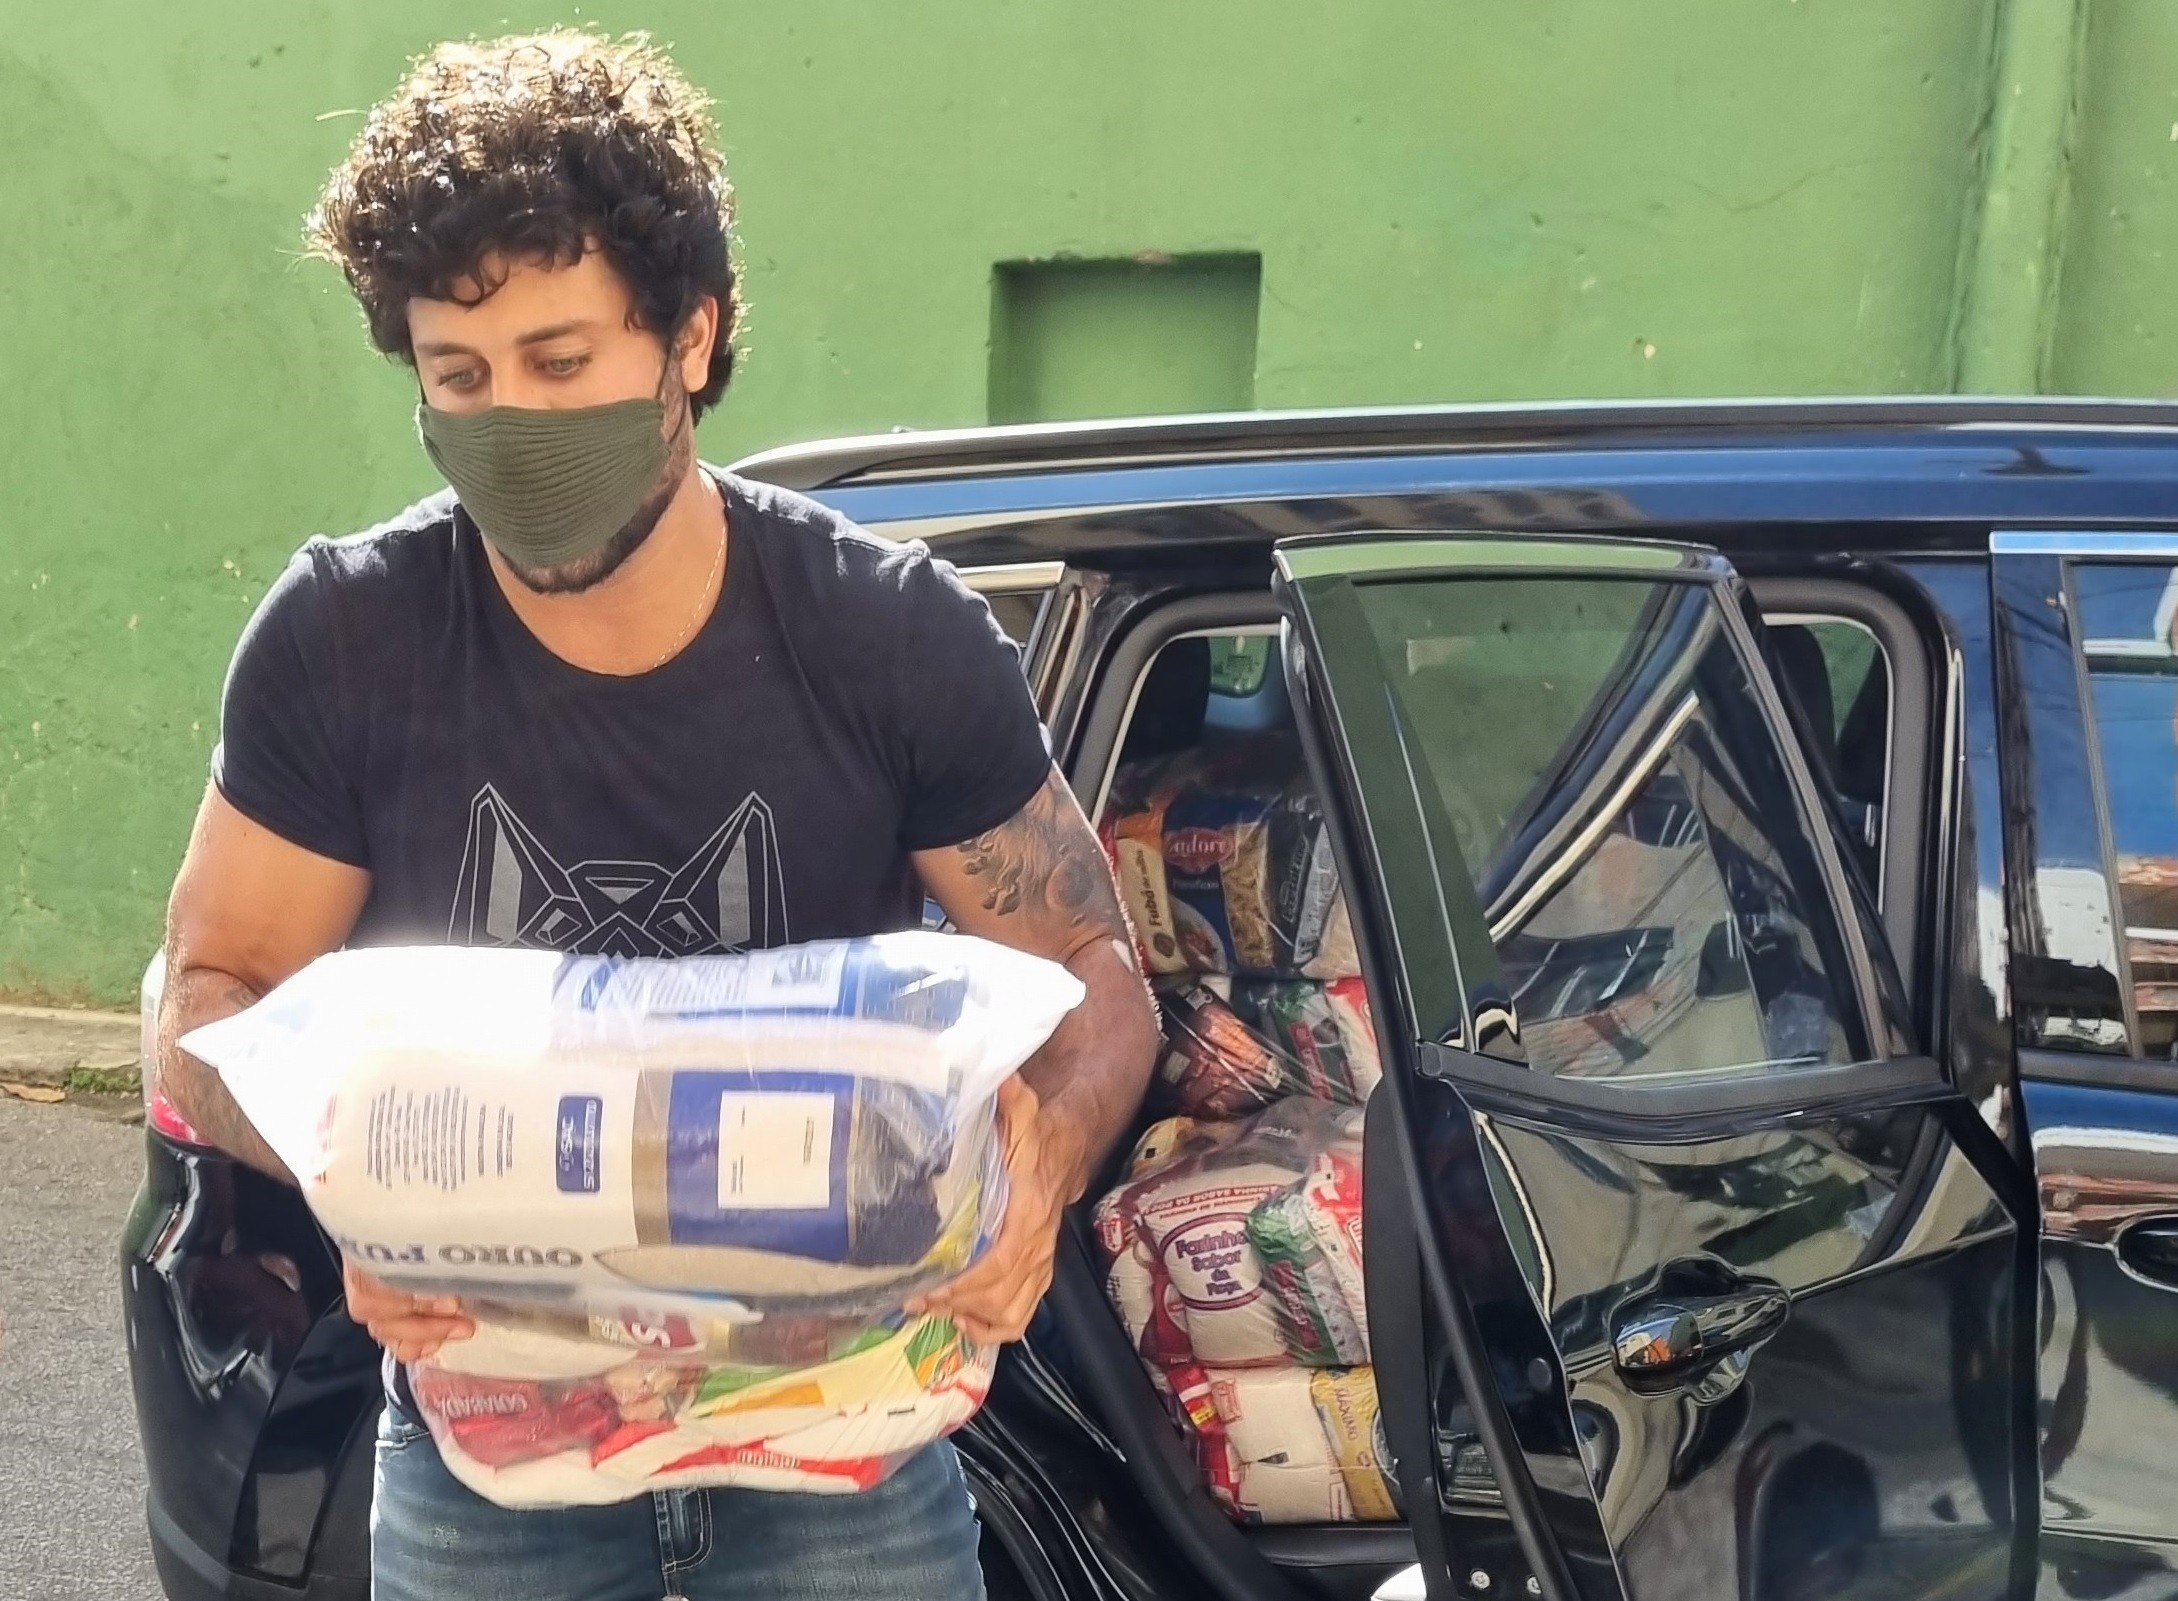 Jesus Luz faz doação de cesta básica no Vidigal (Foto: Daniel Delmiro/AgNews)